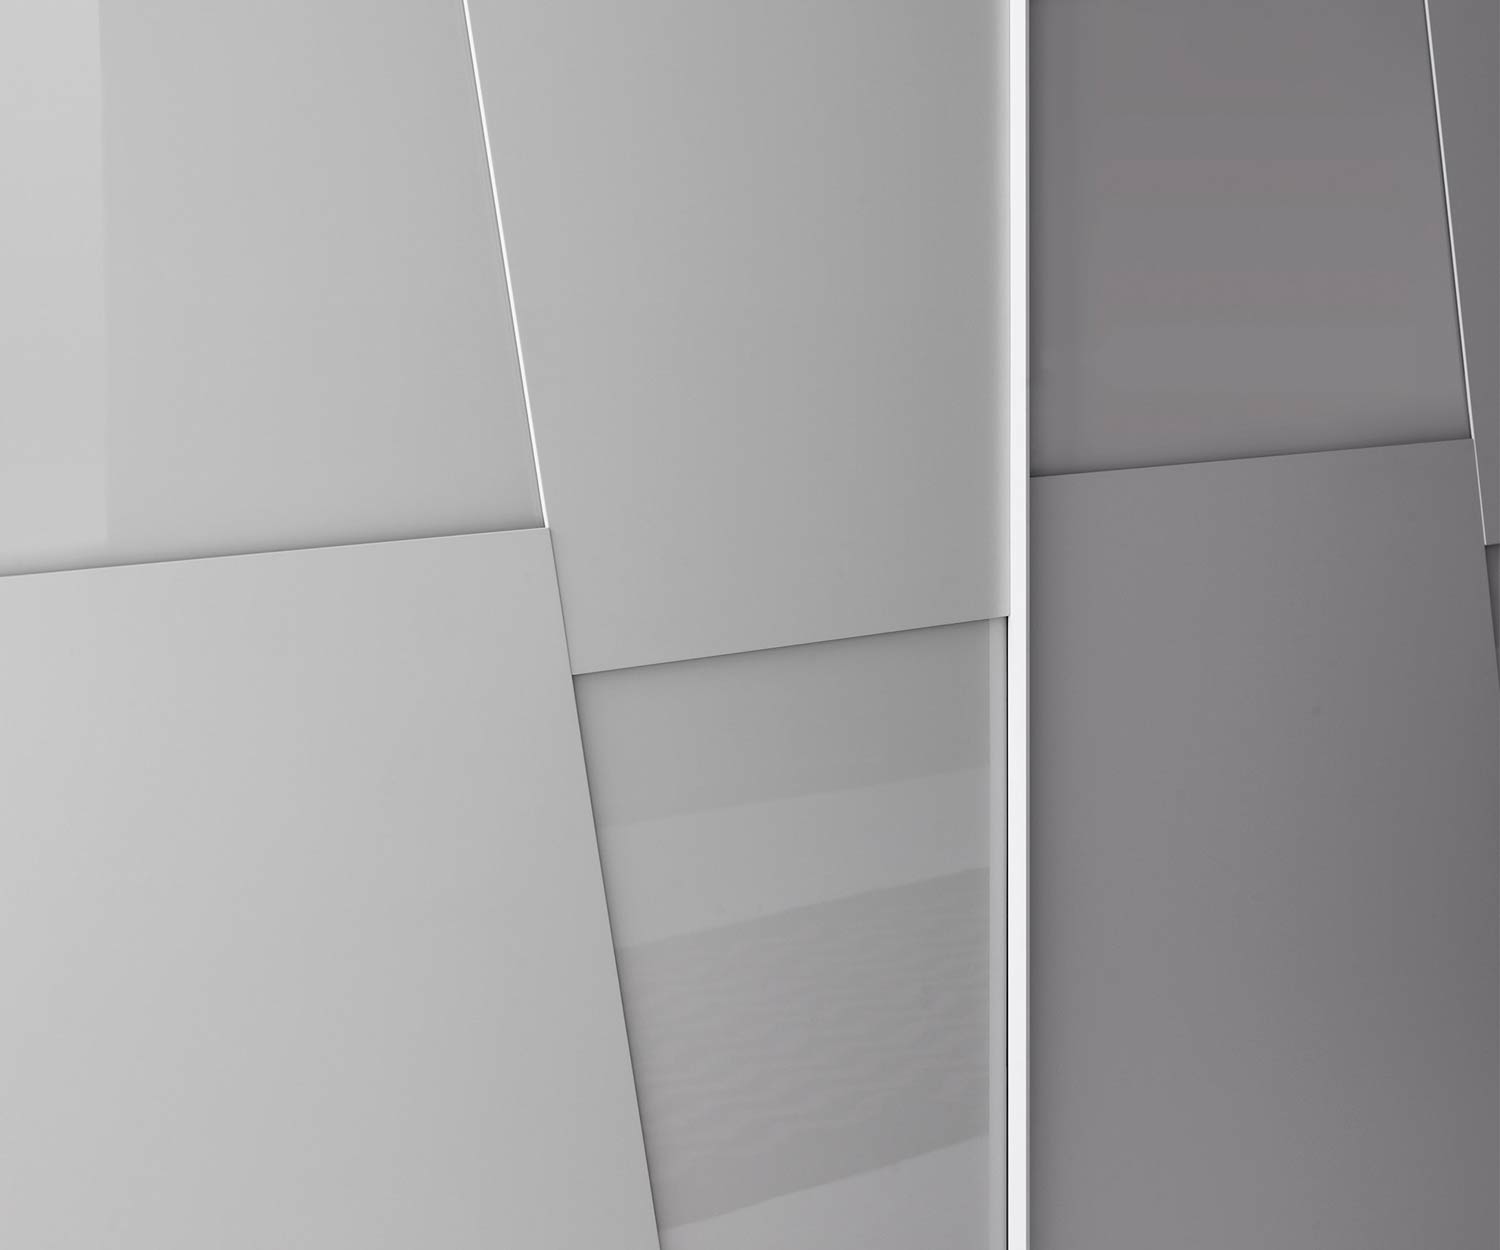 Hoogwaardige Livitalia Design kledingkast Diagonaal in detail de deuren met de verzonken handgrepen